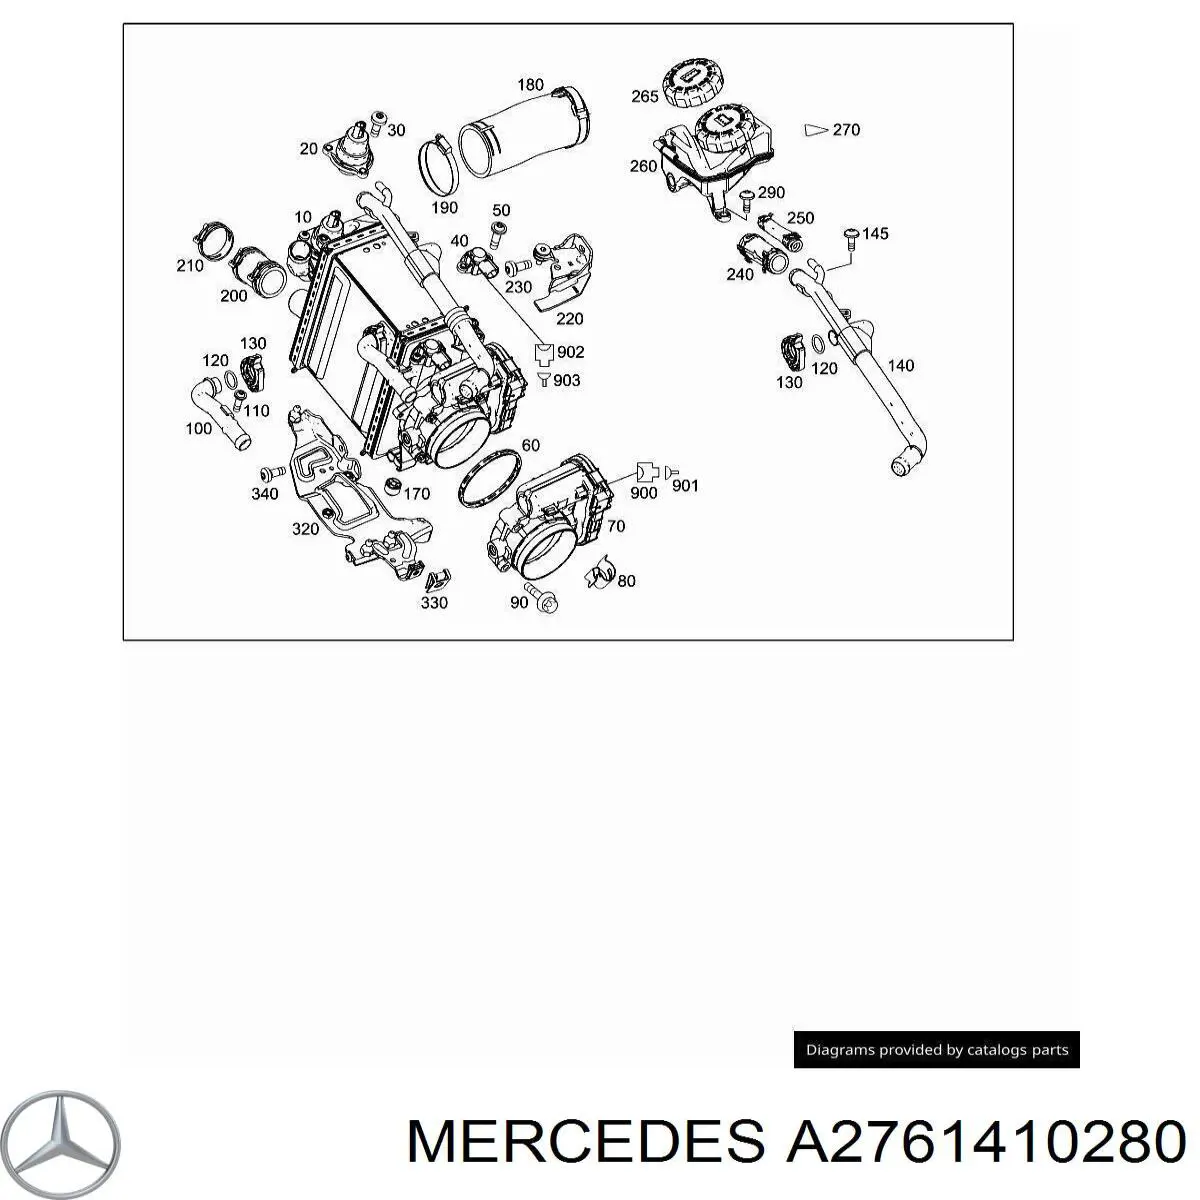 Junta cuerpo mariposa para Mercedes ML/GLE (W167)